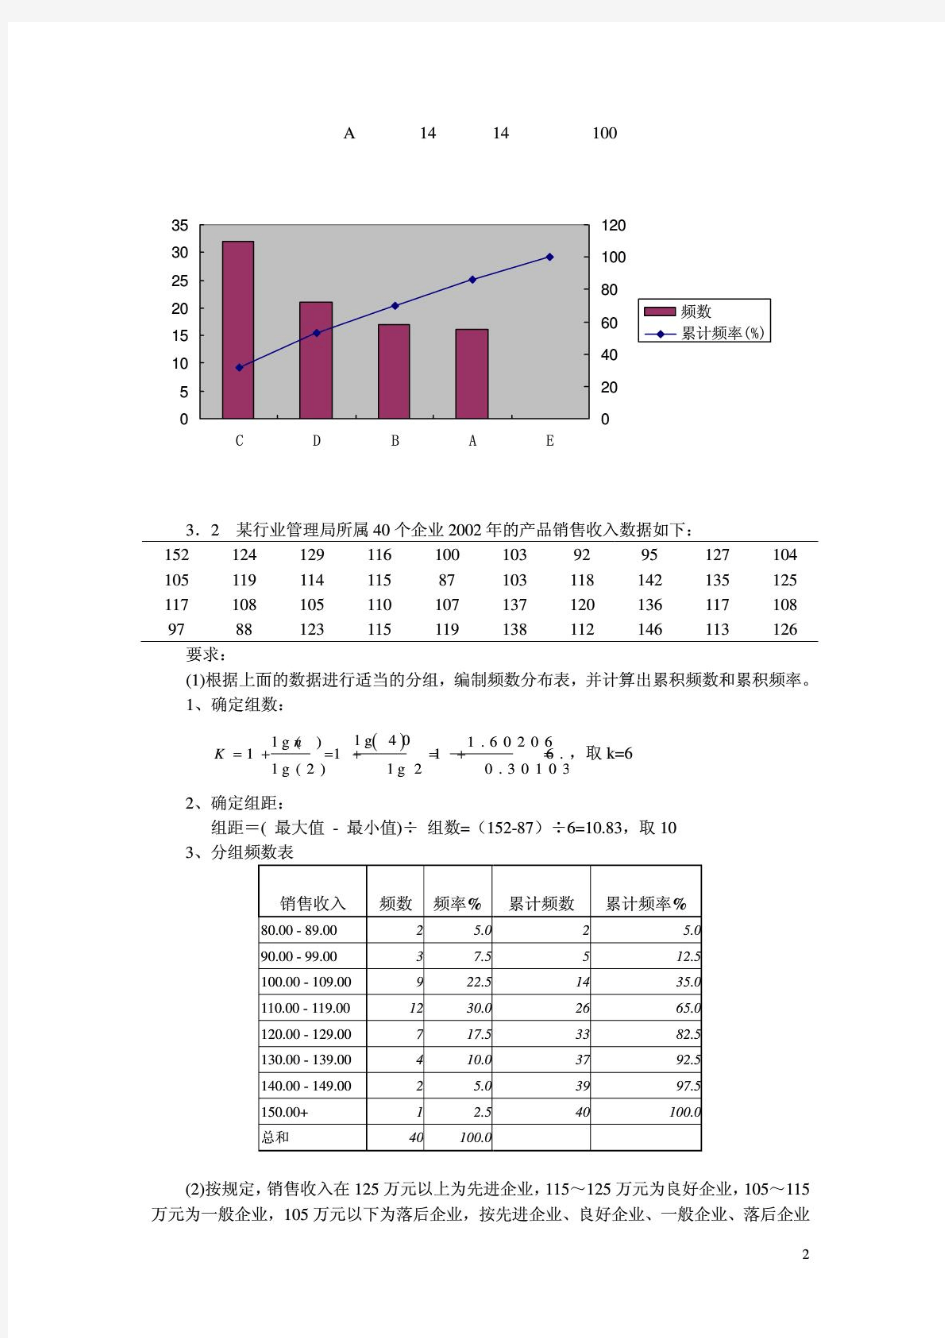 统计学(人大第四版)课后习题答案___贾俊平、何晓群、金勇进